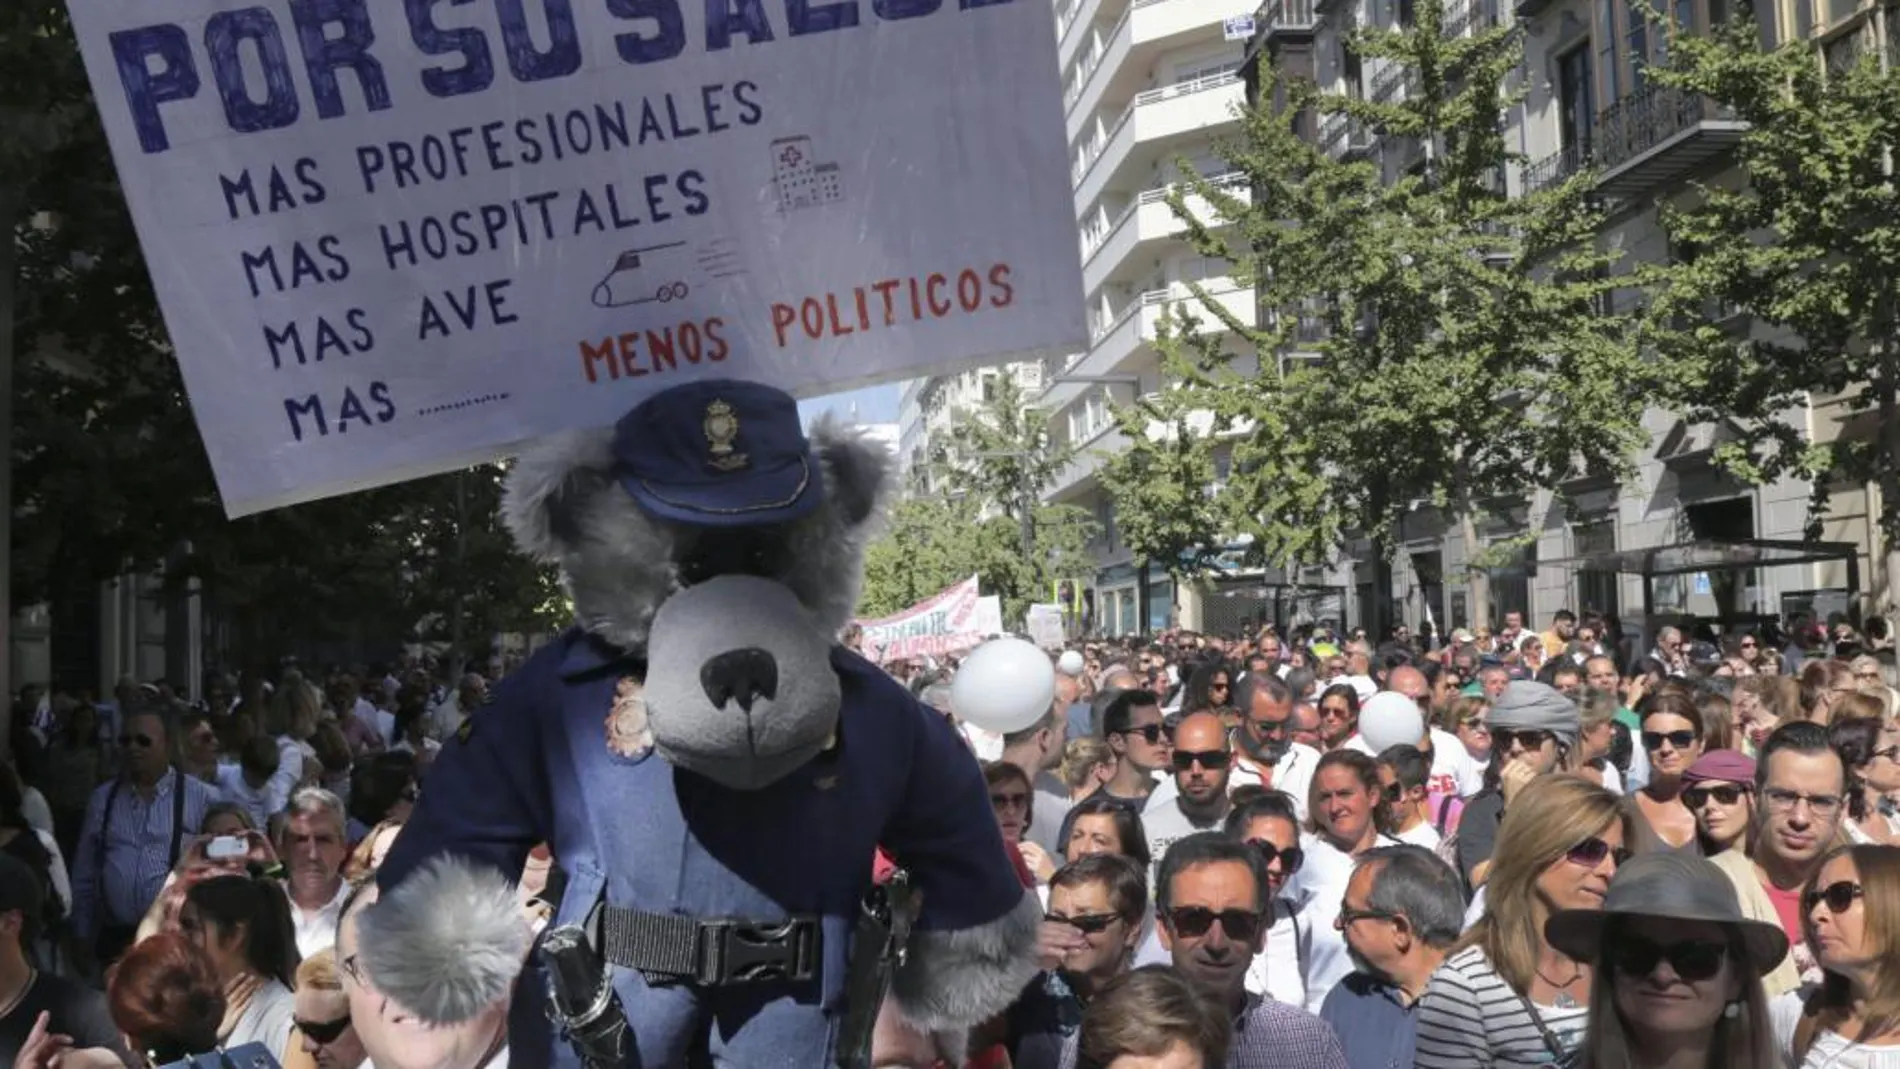 Las movilizaciones contra la gestión sanitaria andaluza se repiten desde el mes de octubre